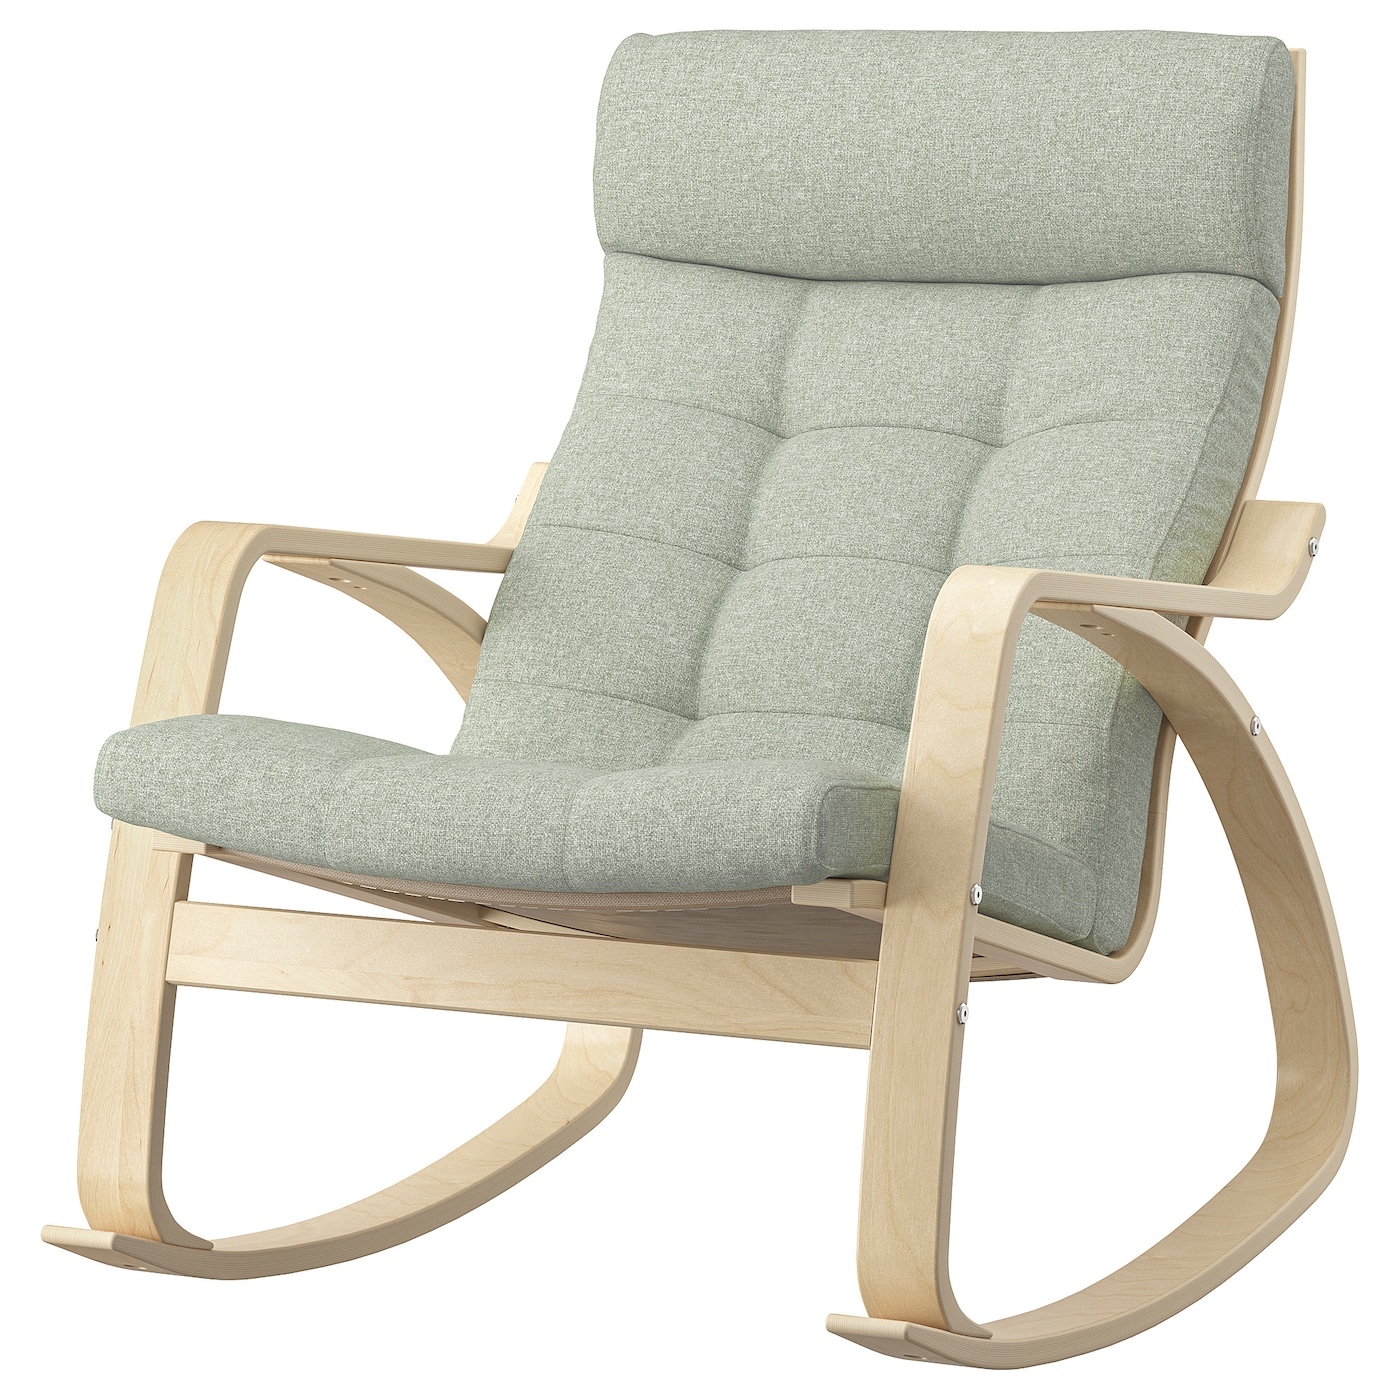 ПОЭНГ Кресло-качалка, березовый шпон/Гуннаред светло-зеленый POÄNG IKEA детское электрическое кресло качалка удобное кресло качалка бесплатная установка